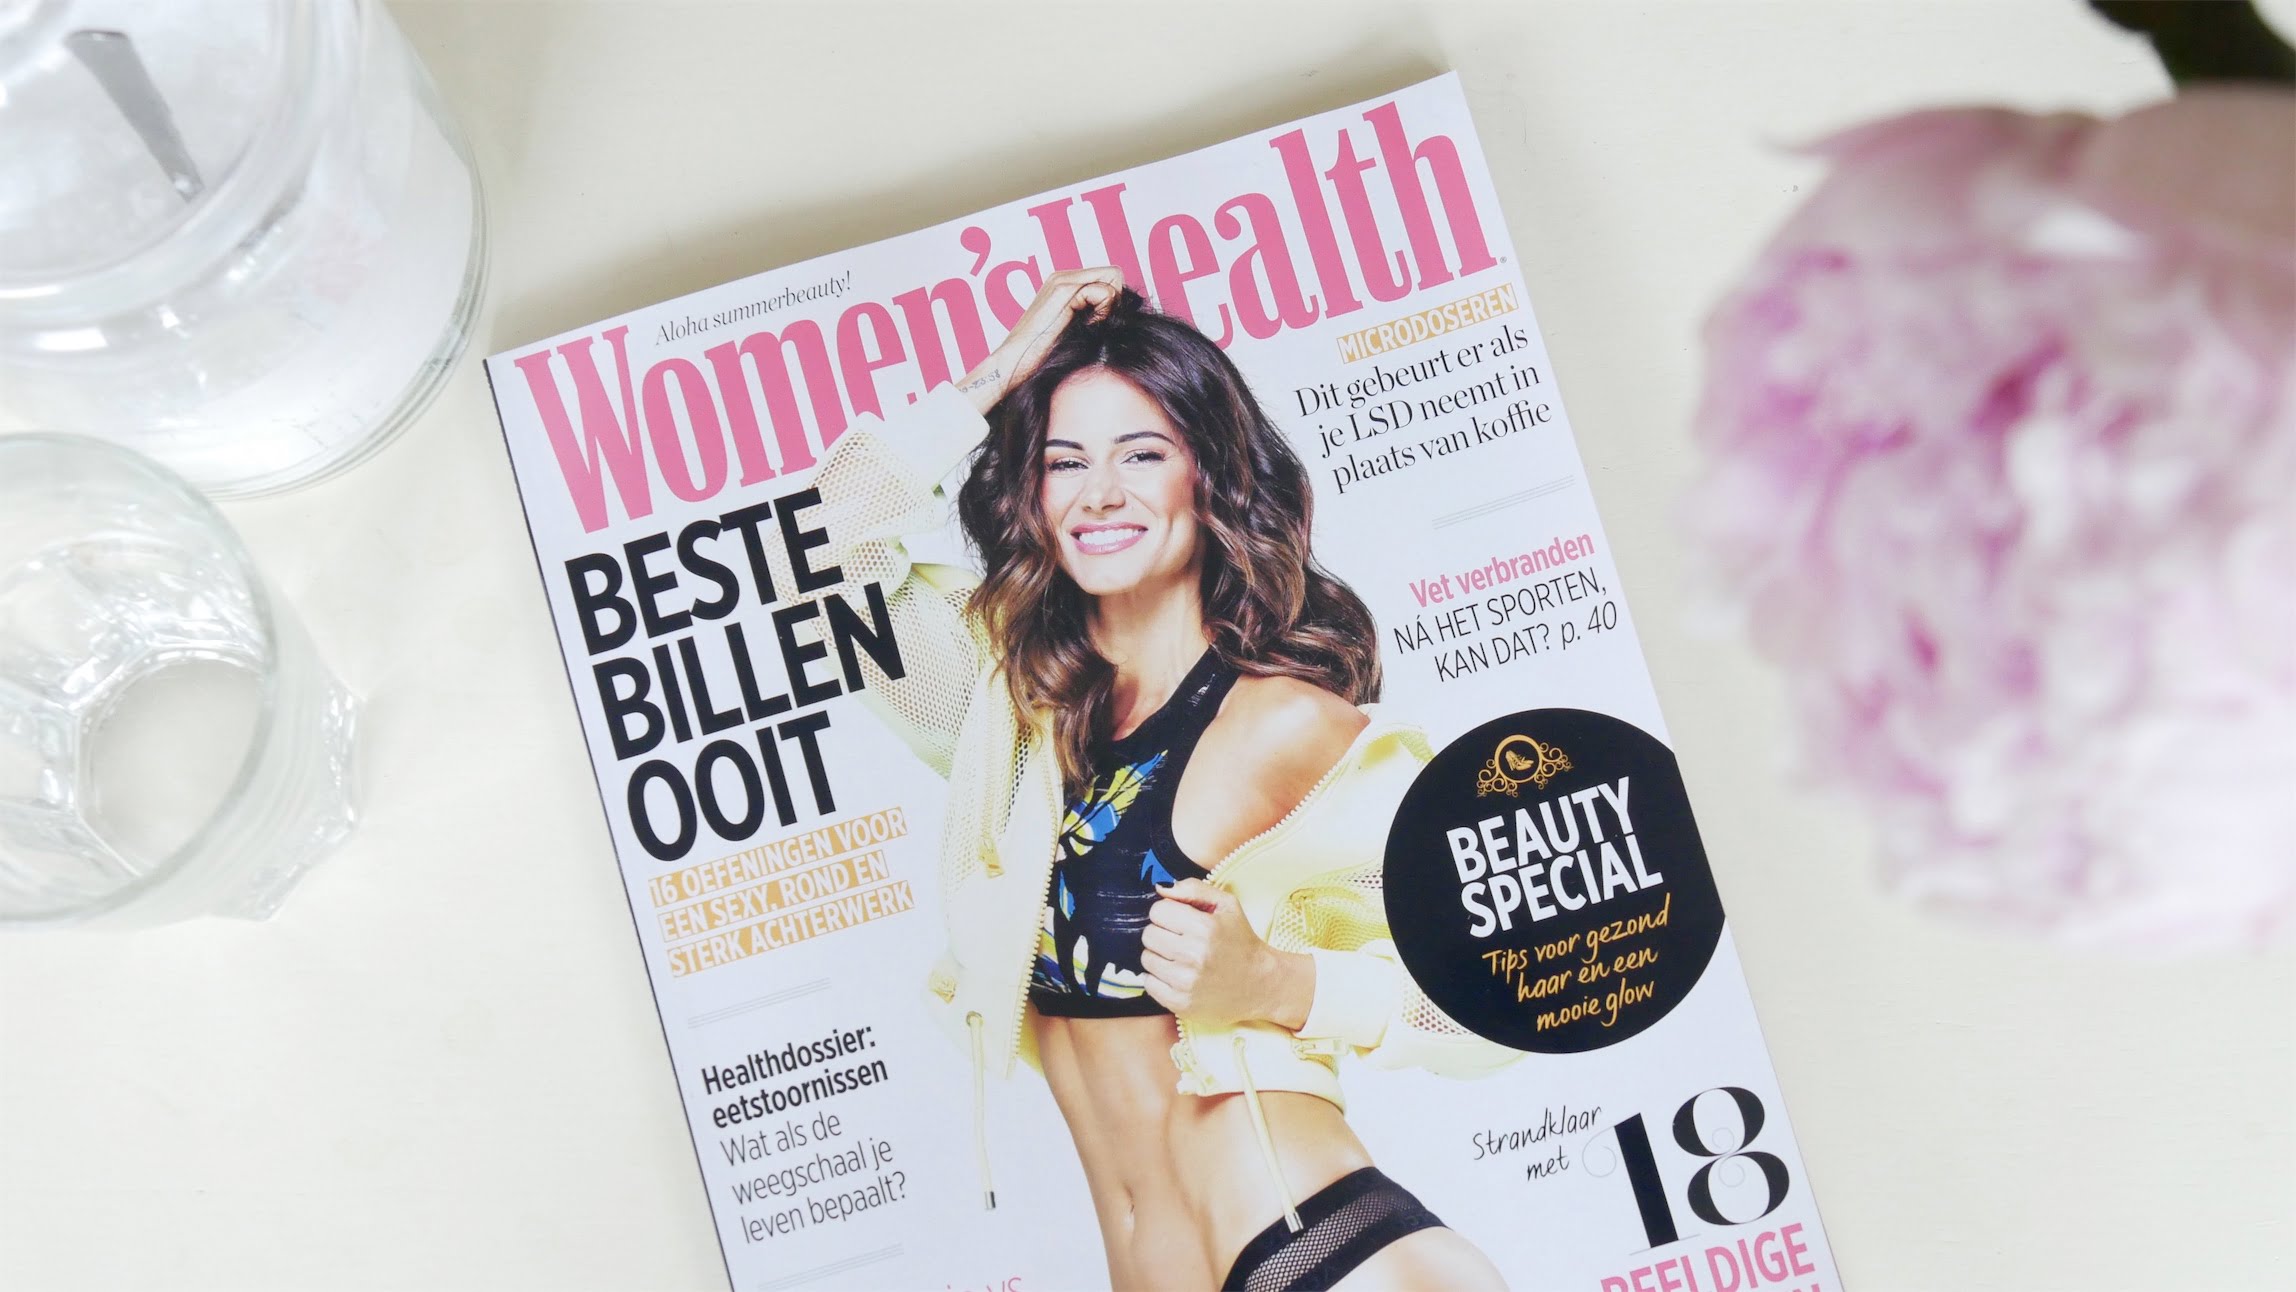 voorkant van het tijdschrift Women's Health juli 2018